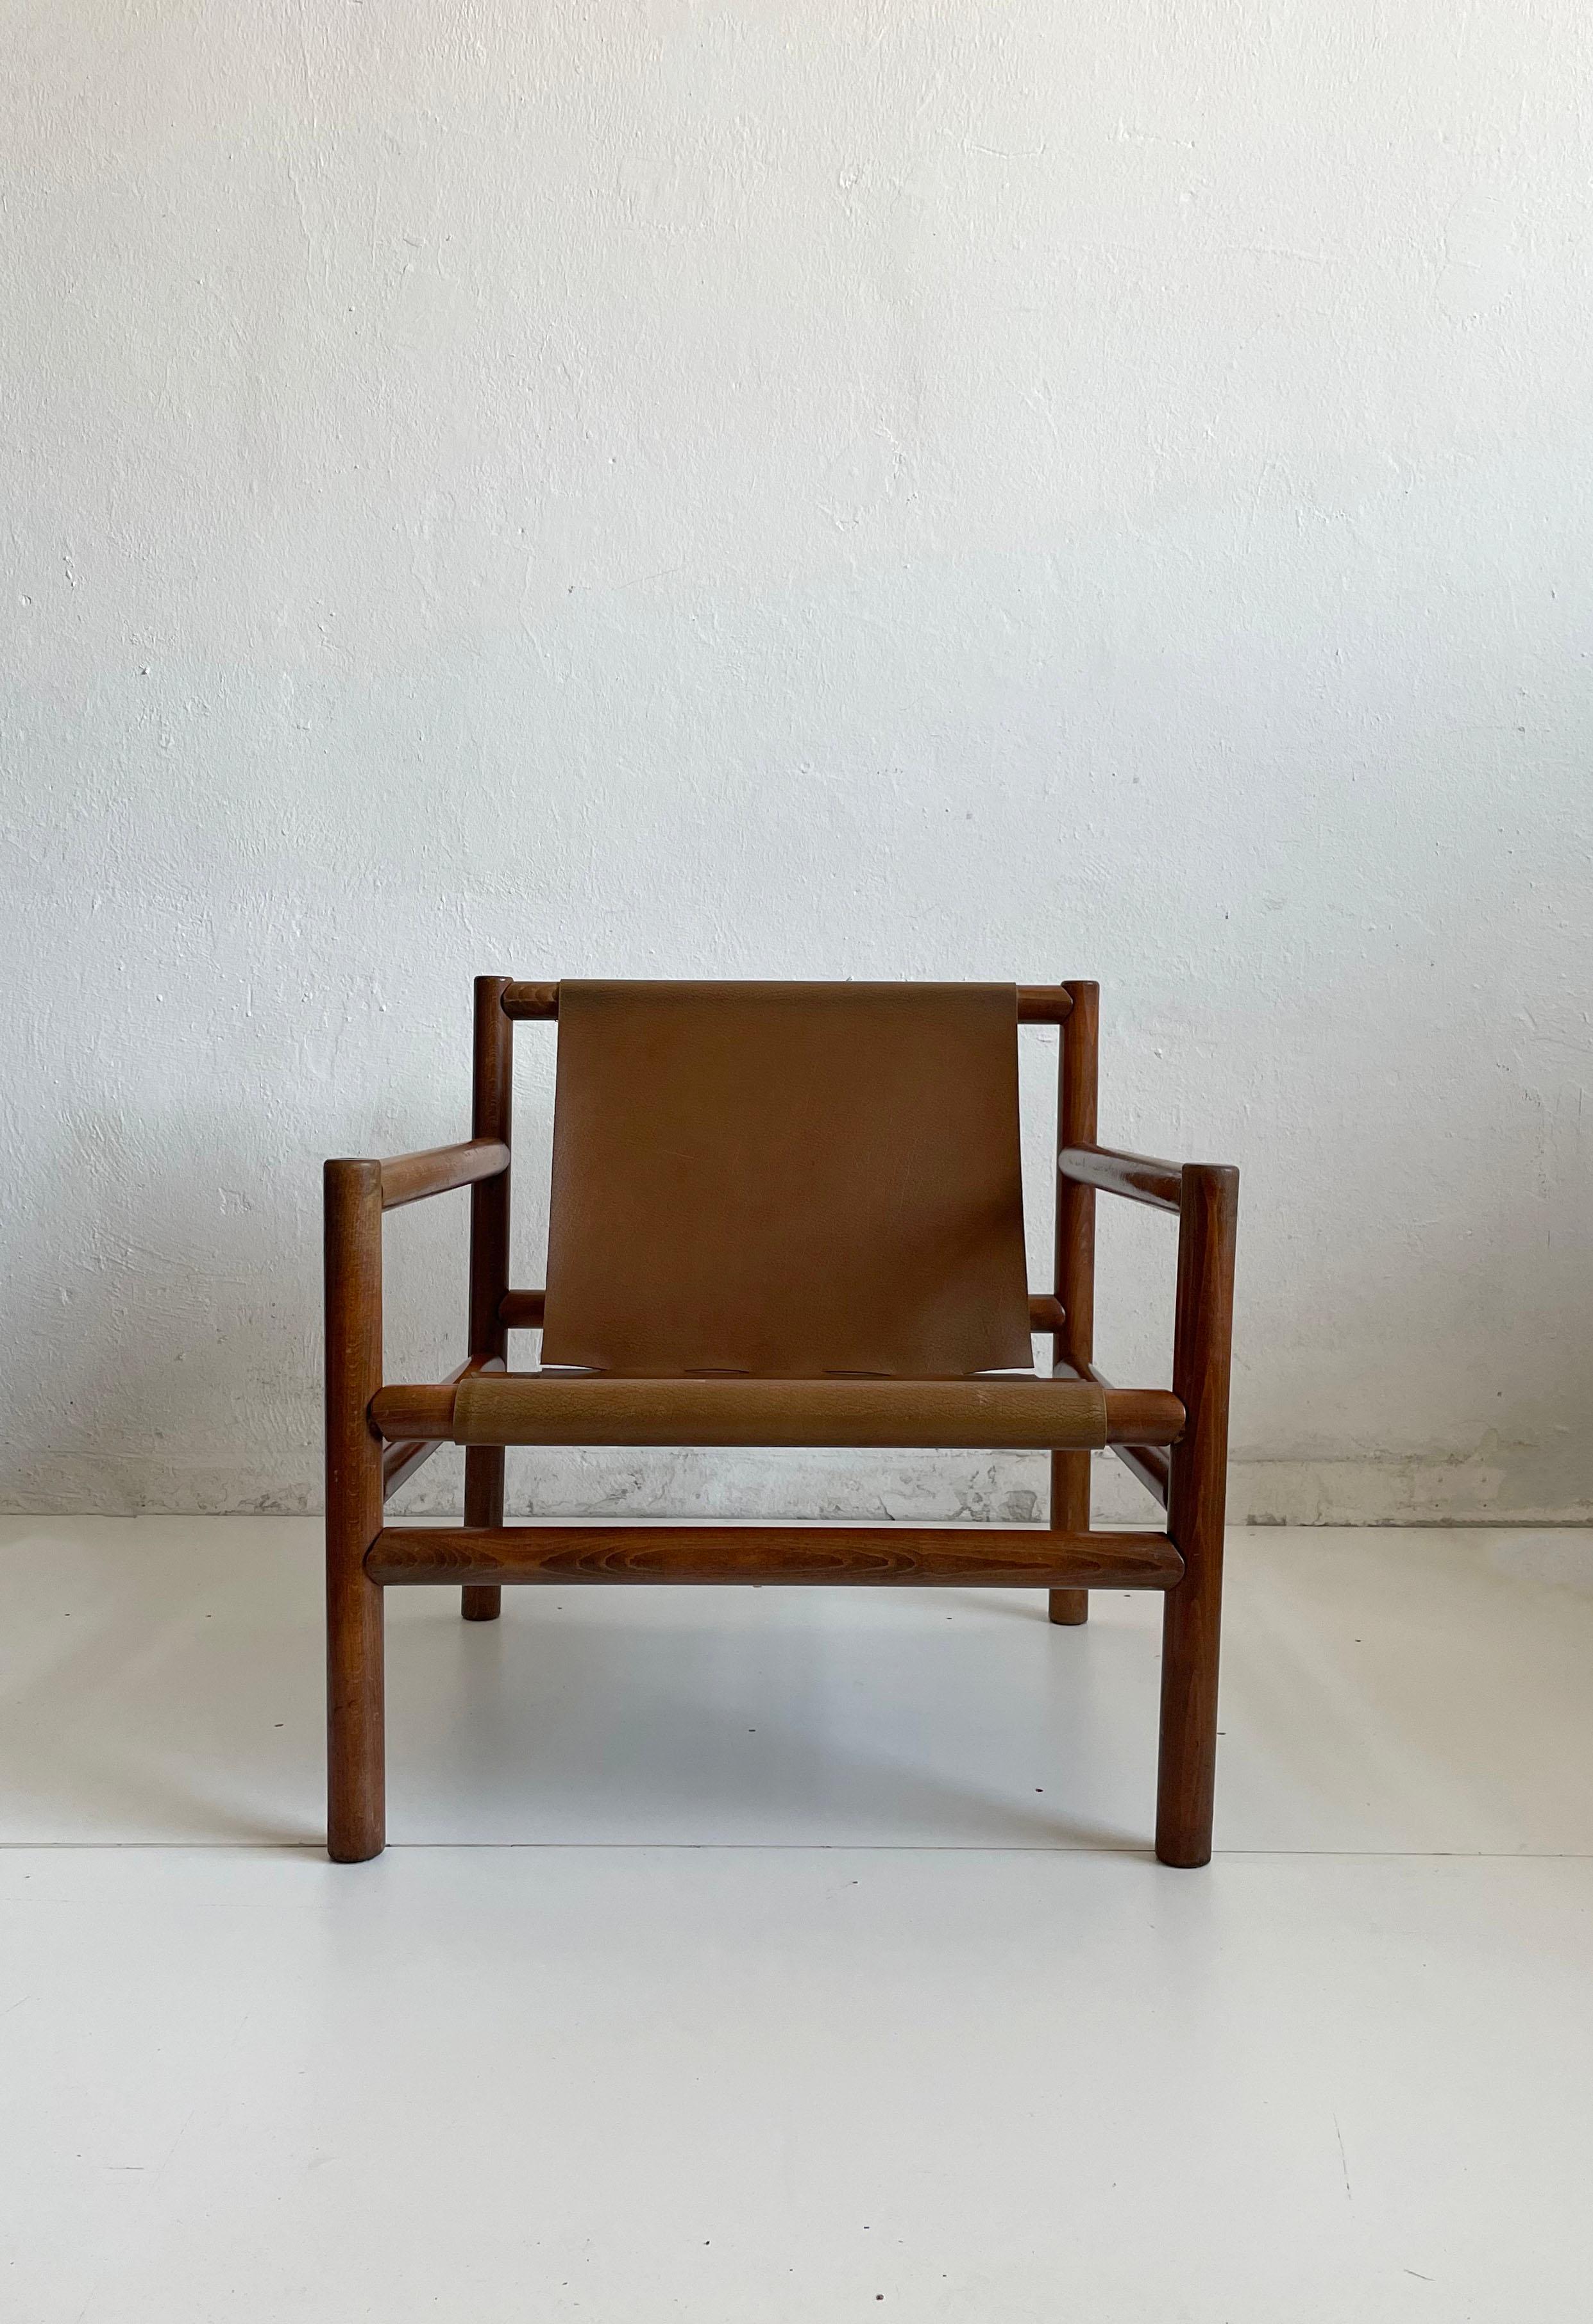 Moderner Sessel aus der Jahrhundertmitte, entworfen von Branko Ursic und hergestellt von Stol Kamnik, Slowenien, 1970er Jahre

Der Stuhl hat einen modernistischen Holzrahmen und einen minimalistischen karamellbraunen Sitz aus Kunstleder

Die